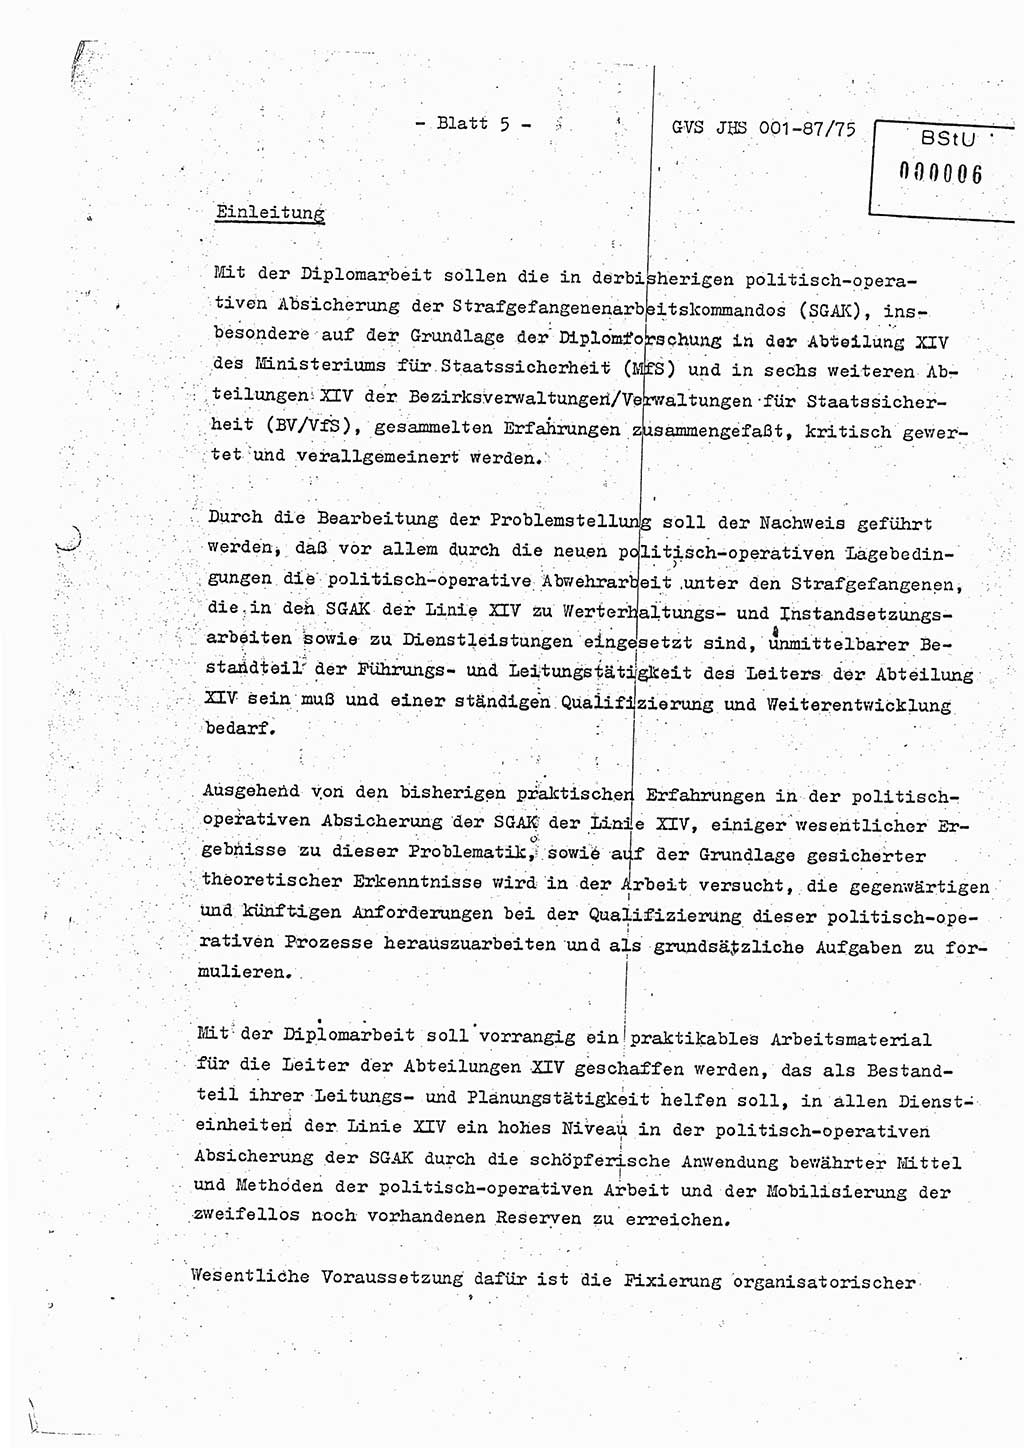 Diplomarbeit Hauptmann Volkmar Heinz (Abt. ⅩⅣ), Oberleutnant Lothar Rüdiger (BV Lpz. Abt. Ⅺ), Ministerium für Staatssicherheit (MfS) [Deutsche Demokratische Republik (DDR)], Juristische Hochschule (JHS), Geheime Verschlußsache (GVS) o001-87/75, Potsdam 1975, Seite 5 (Dipl.-Arb. MfS DDR JHS GVS o001-87/75 1975, S. 5)